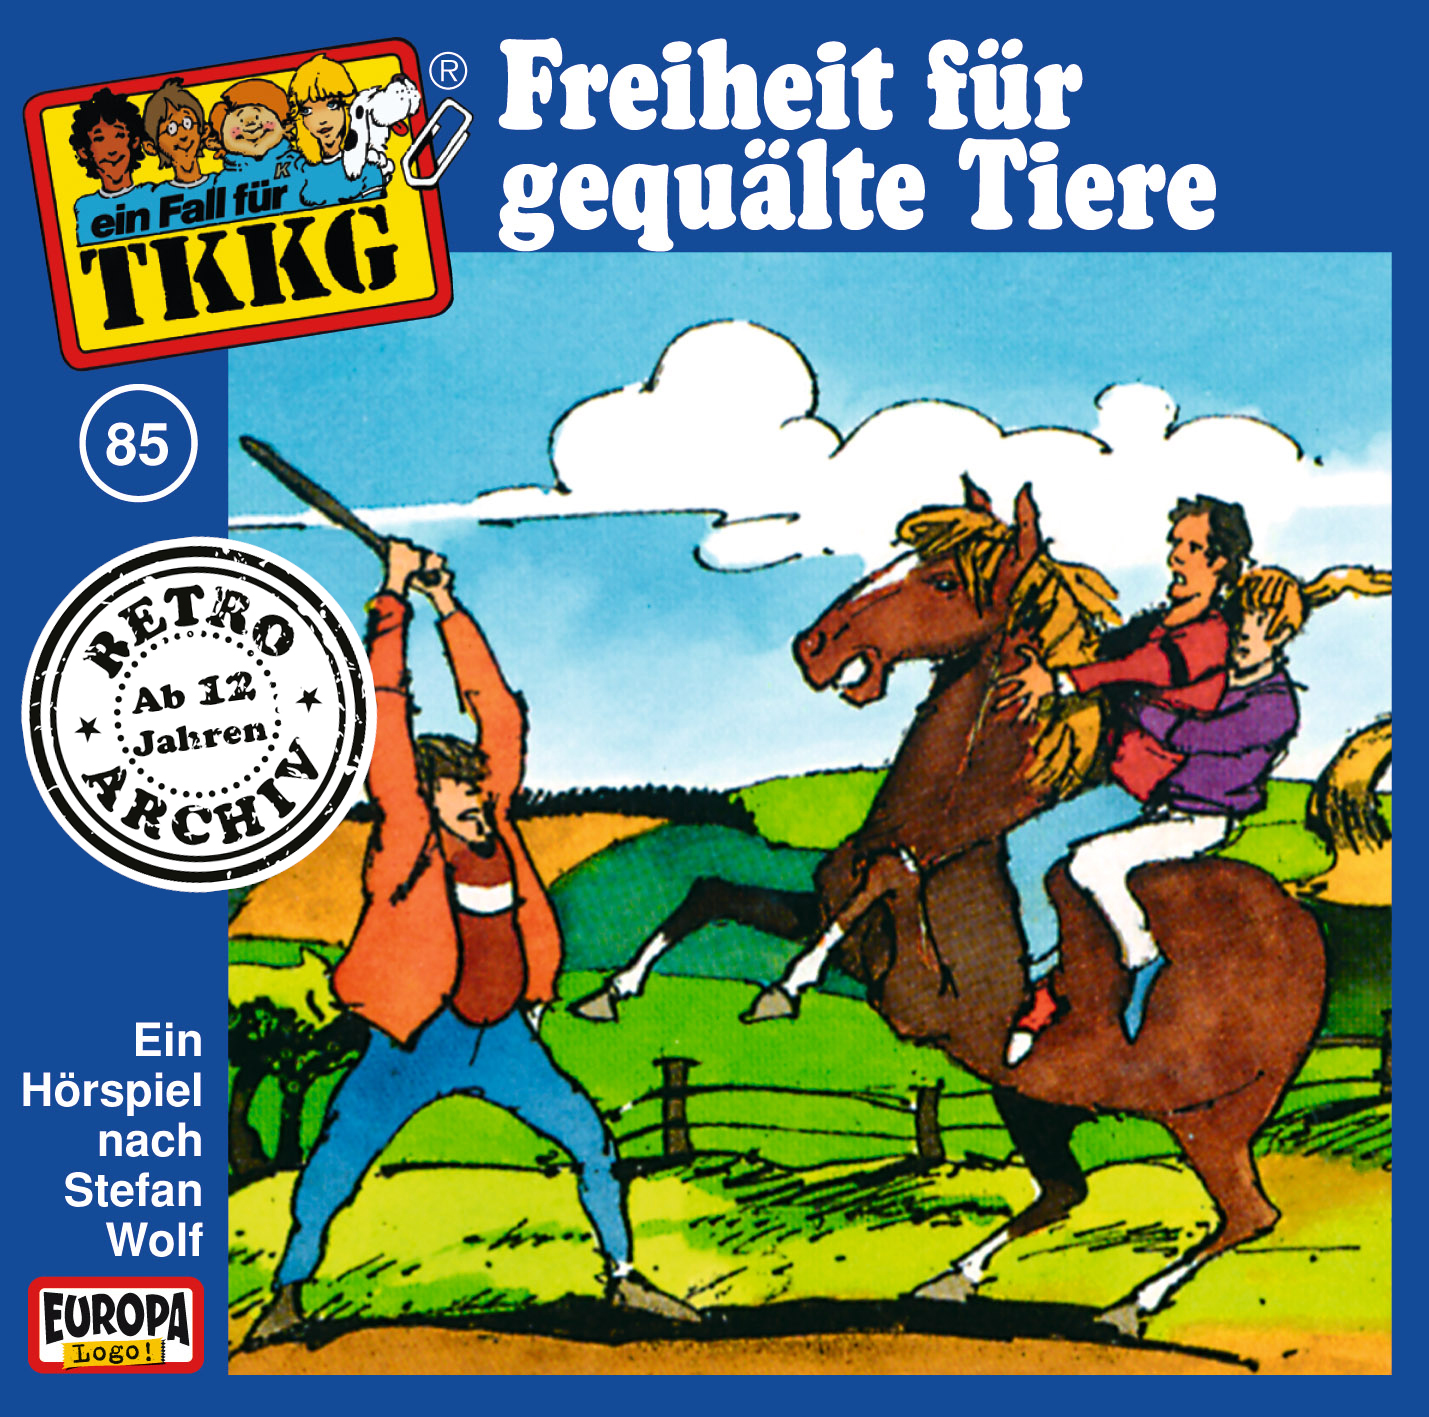 TKKG Retro-Archiv: Freiheit für gequälte Tiere